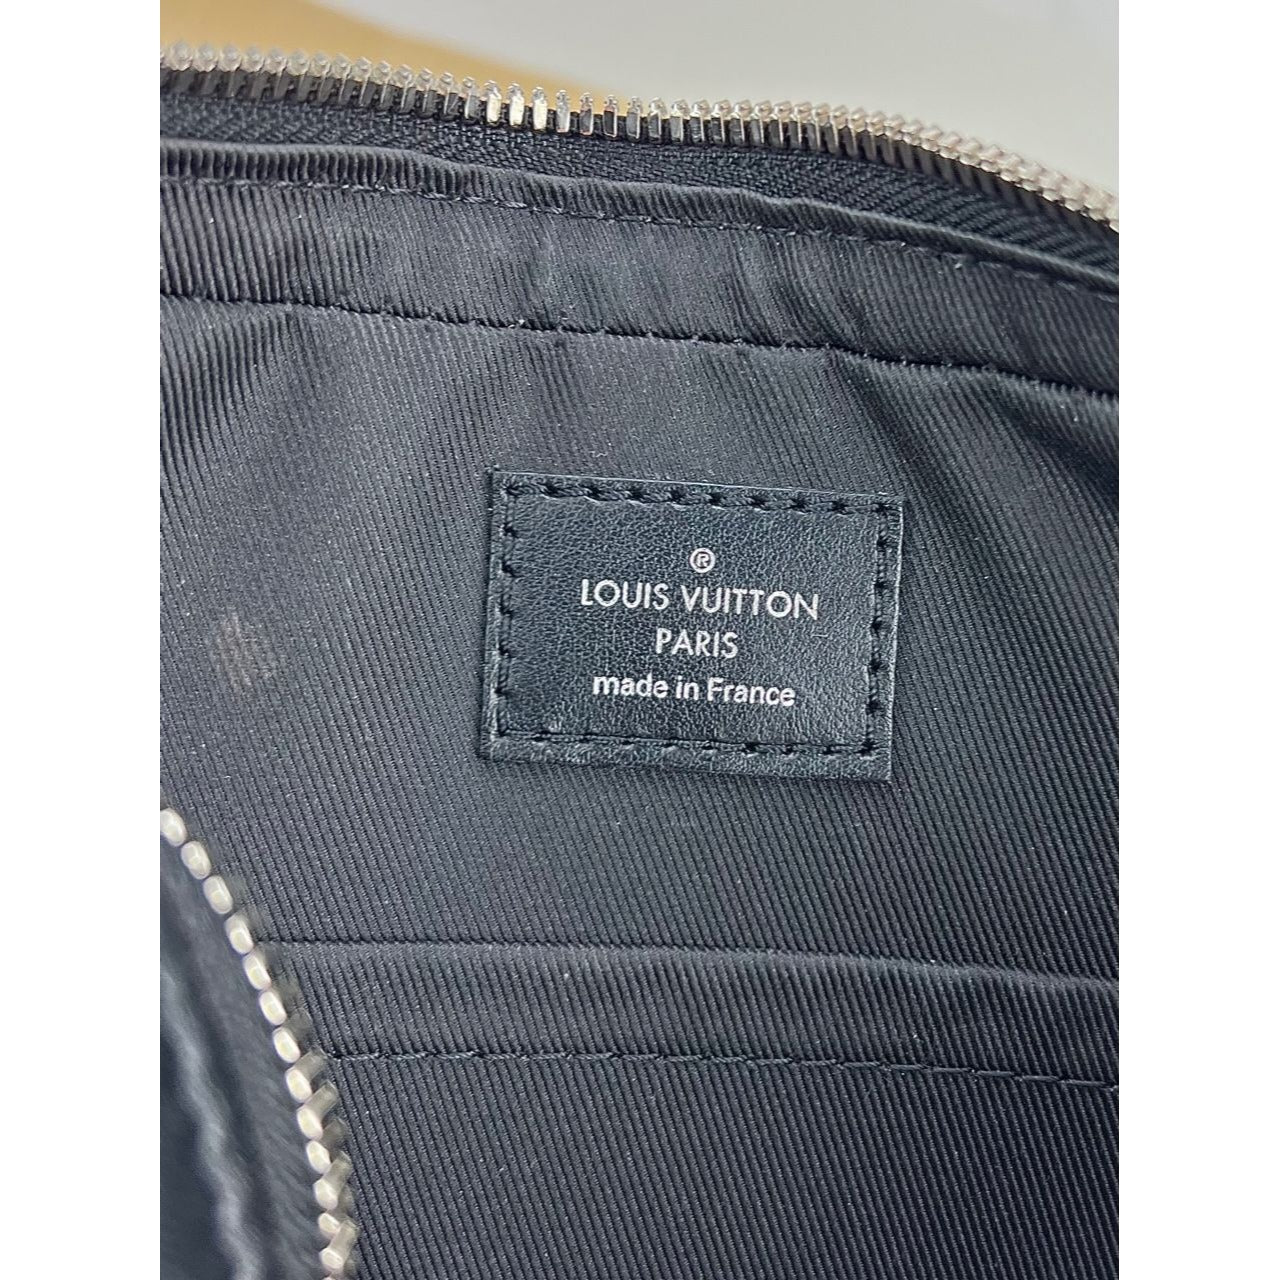 Louis Vuitton - Trio Messenger Bag - Damier Canvas - Graphite - Men - Luxury